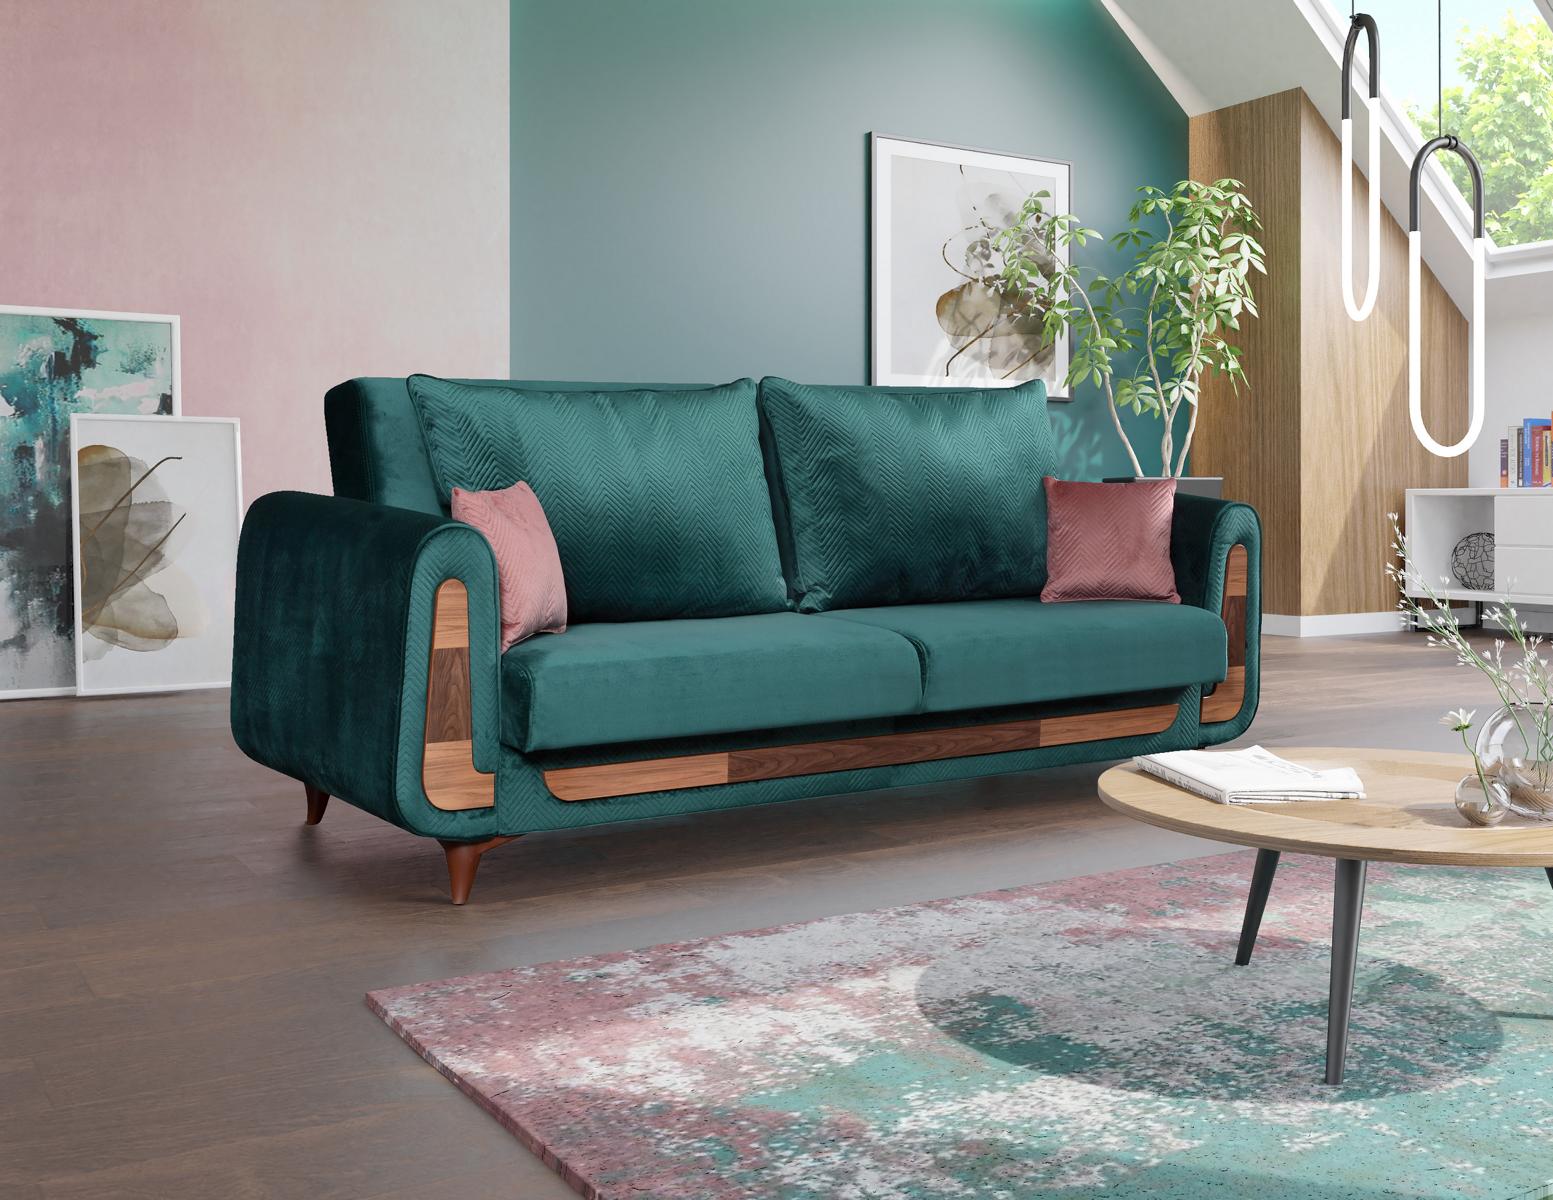 Luxus Schlafsofa Couch Sofa Möbel Big Sofas Design Couchen Viersitzer Möbel Neu